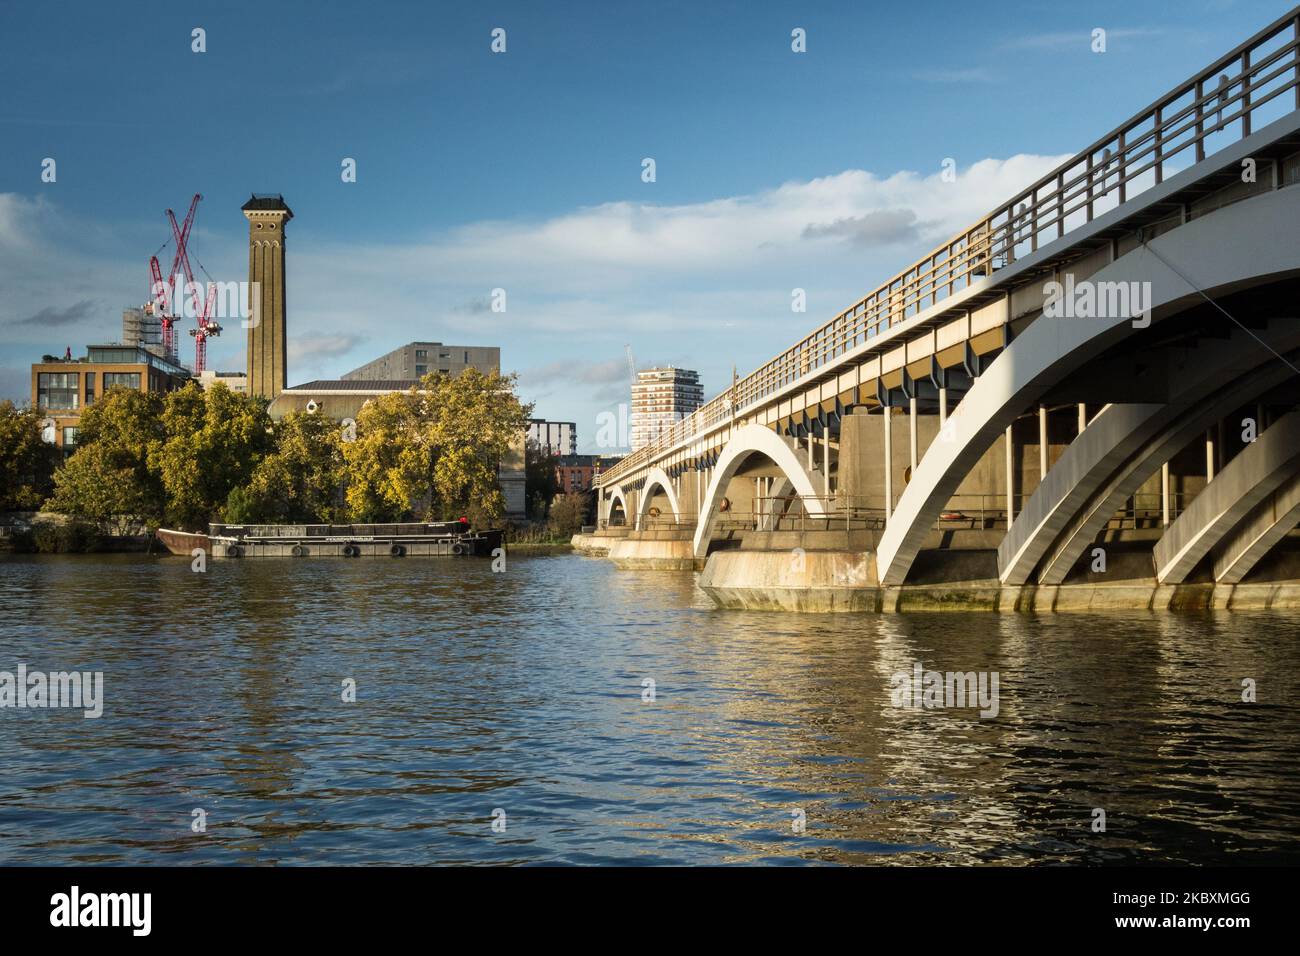 Il Ponte Grosvenor con la vecchia torre della stazione di pompaggio delle acque reflue di Grosvenor Road sullo sfondo, Londra, Inghilterra, Regno Unito Foto Stock